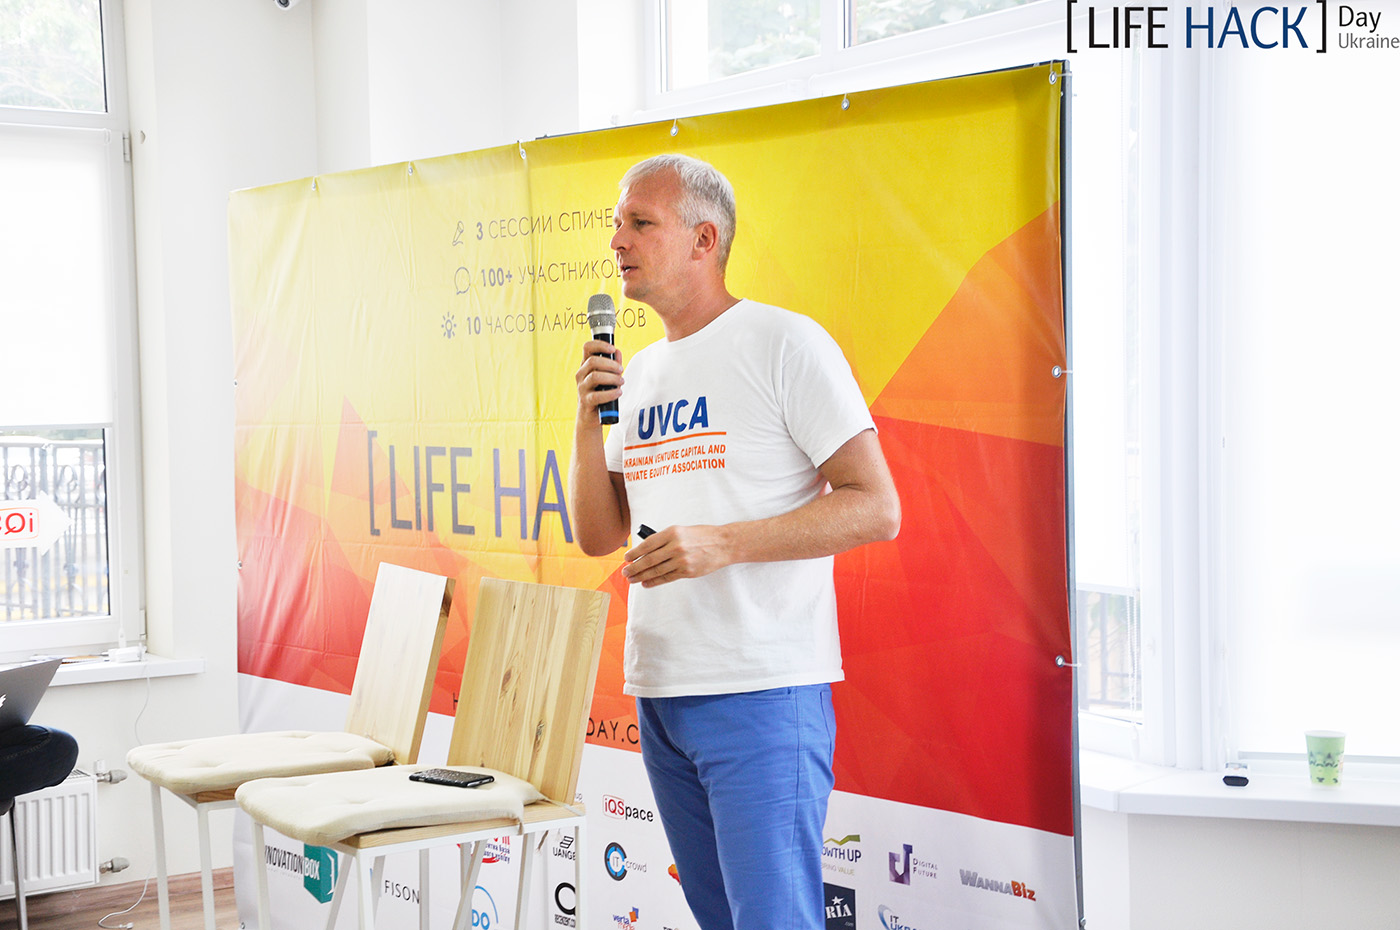 Лайфхаки для бизнеса на LifeHackDay 2016 - Odessa